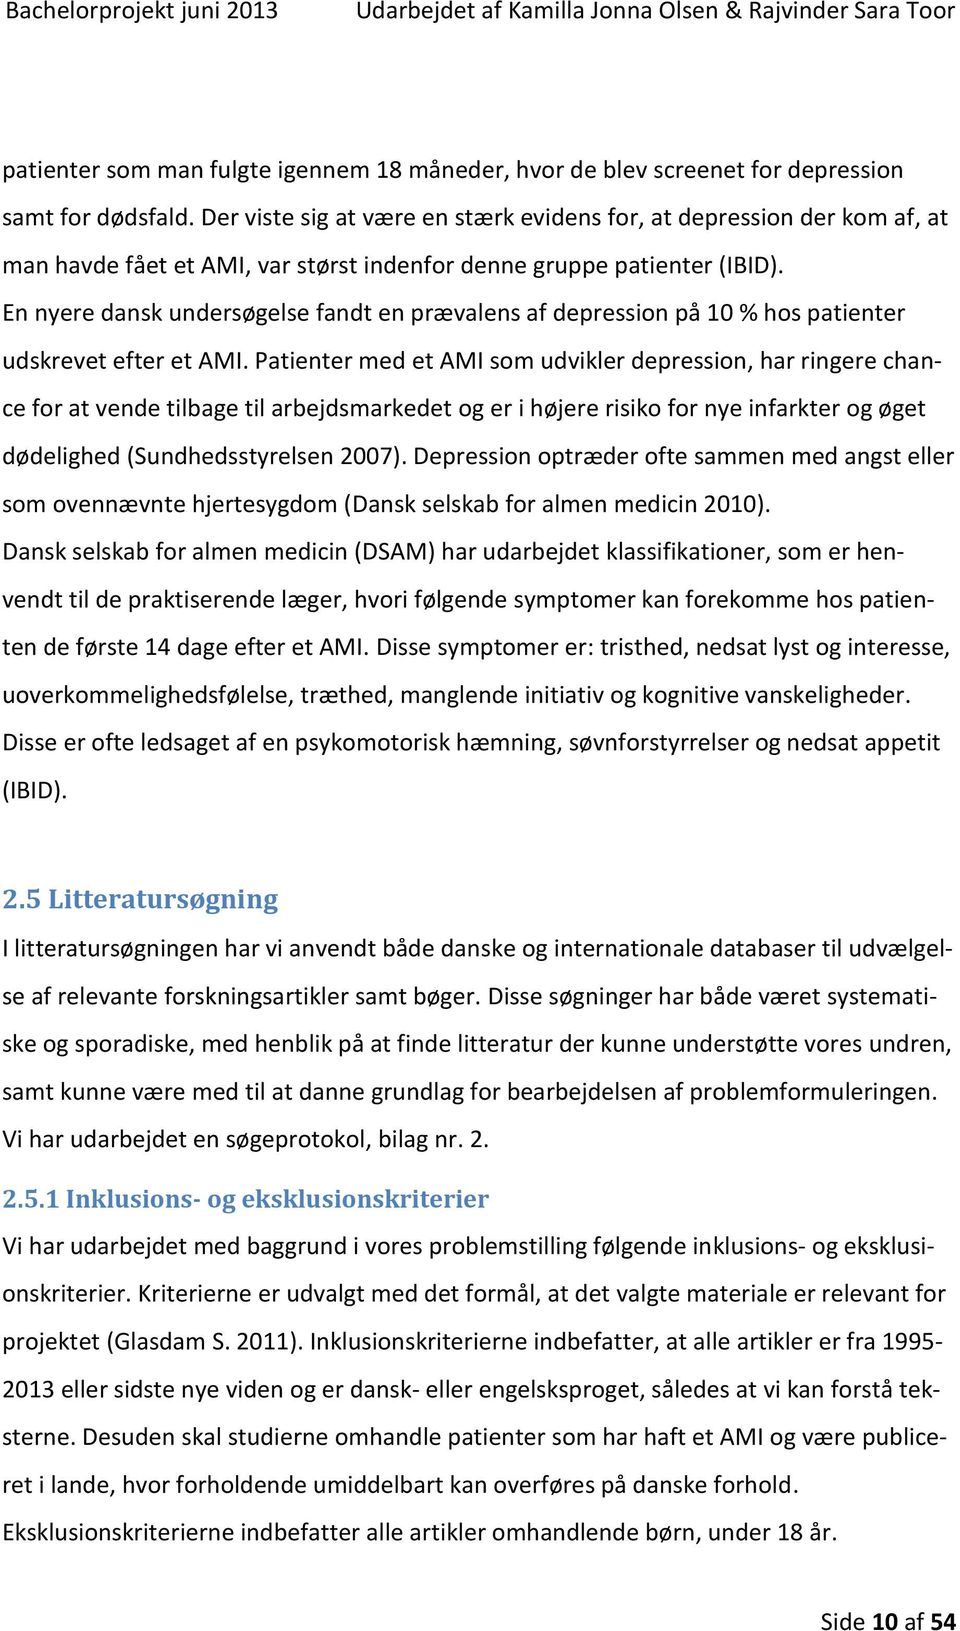 En nyere dansk undersøgelse fandt en prævalens af depression på 10 % hos patienter udskrevet efter et AMI.